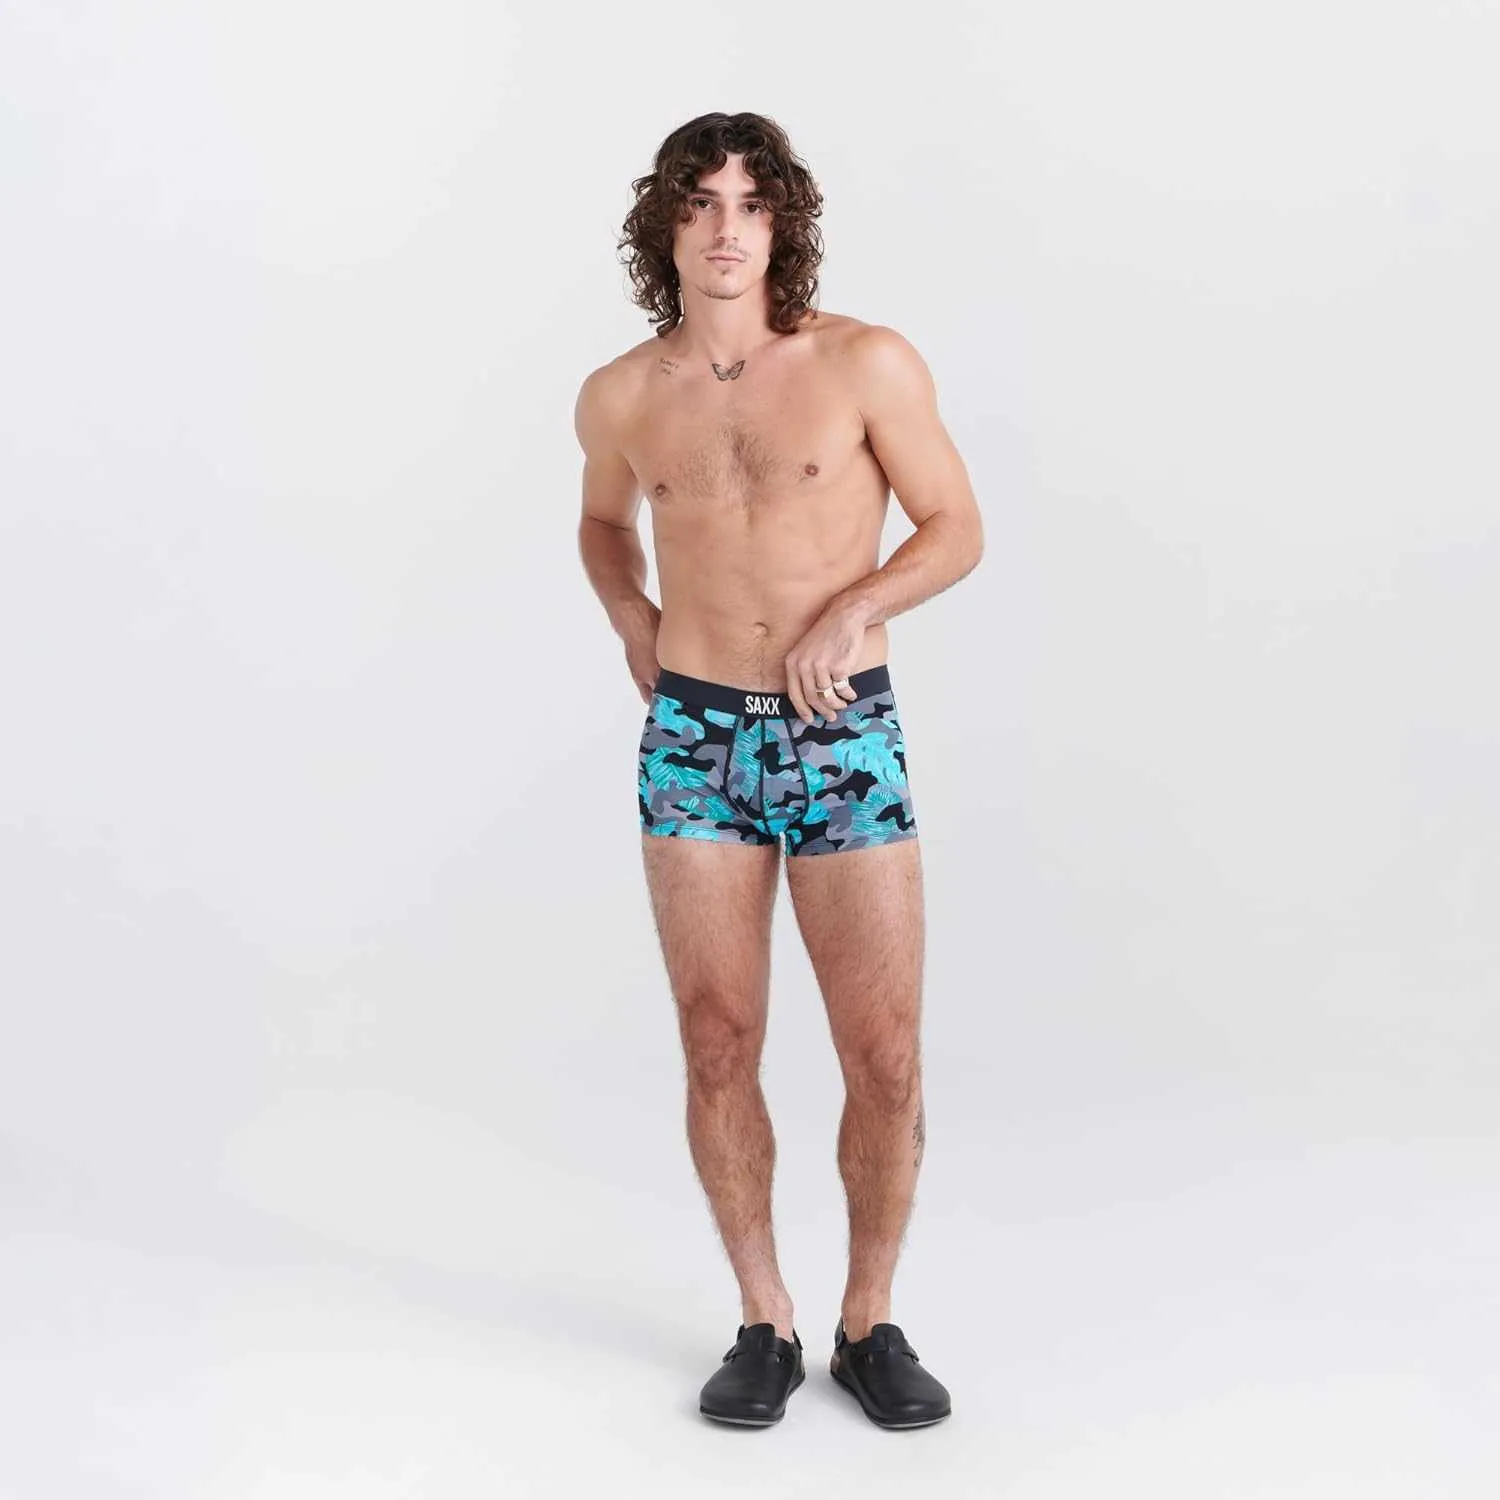 SAXX Mens Underwear VIBE Super Soft Underwear Built In Small Pocket Support  Mens Underwear From Dhgatesale6, $7.15